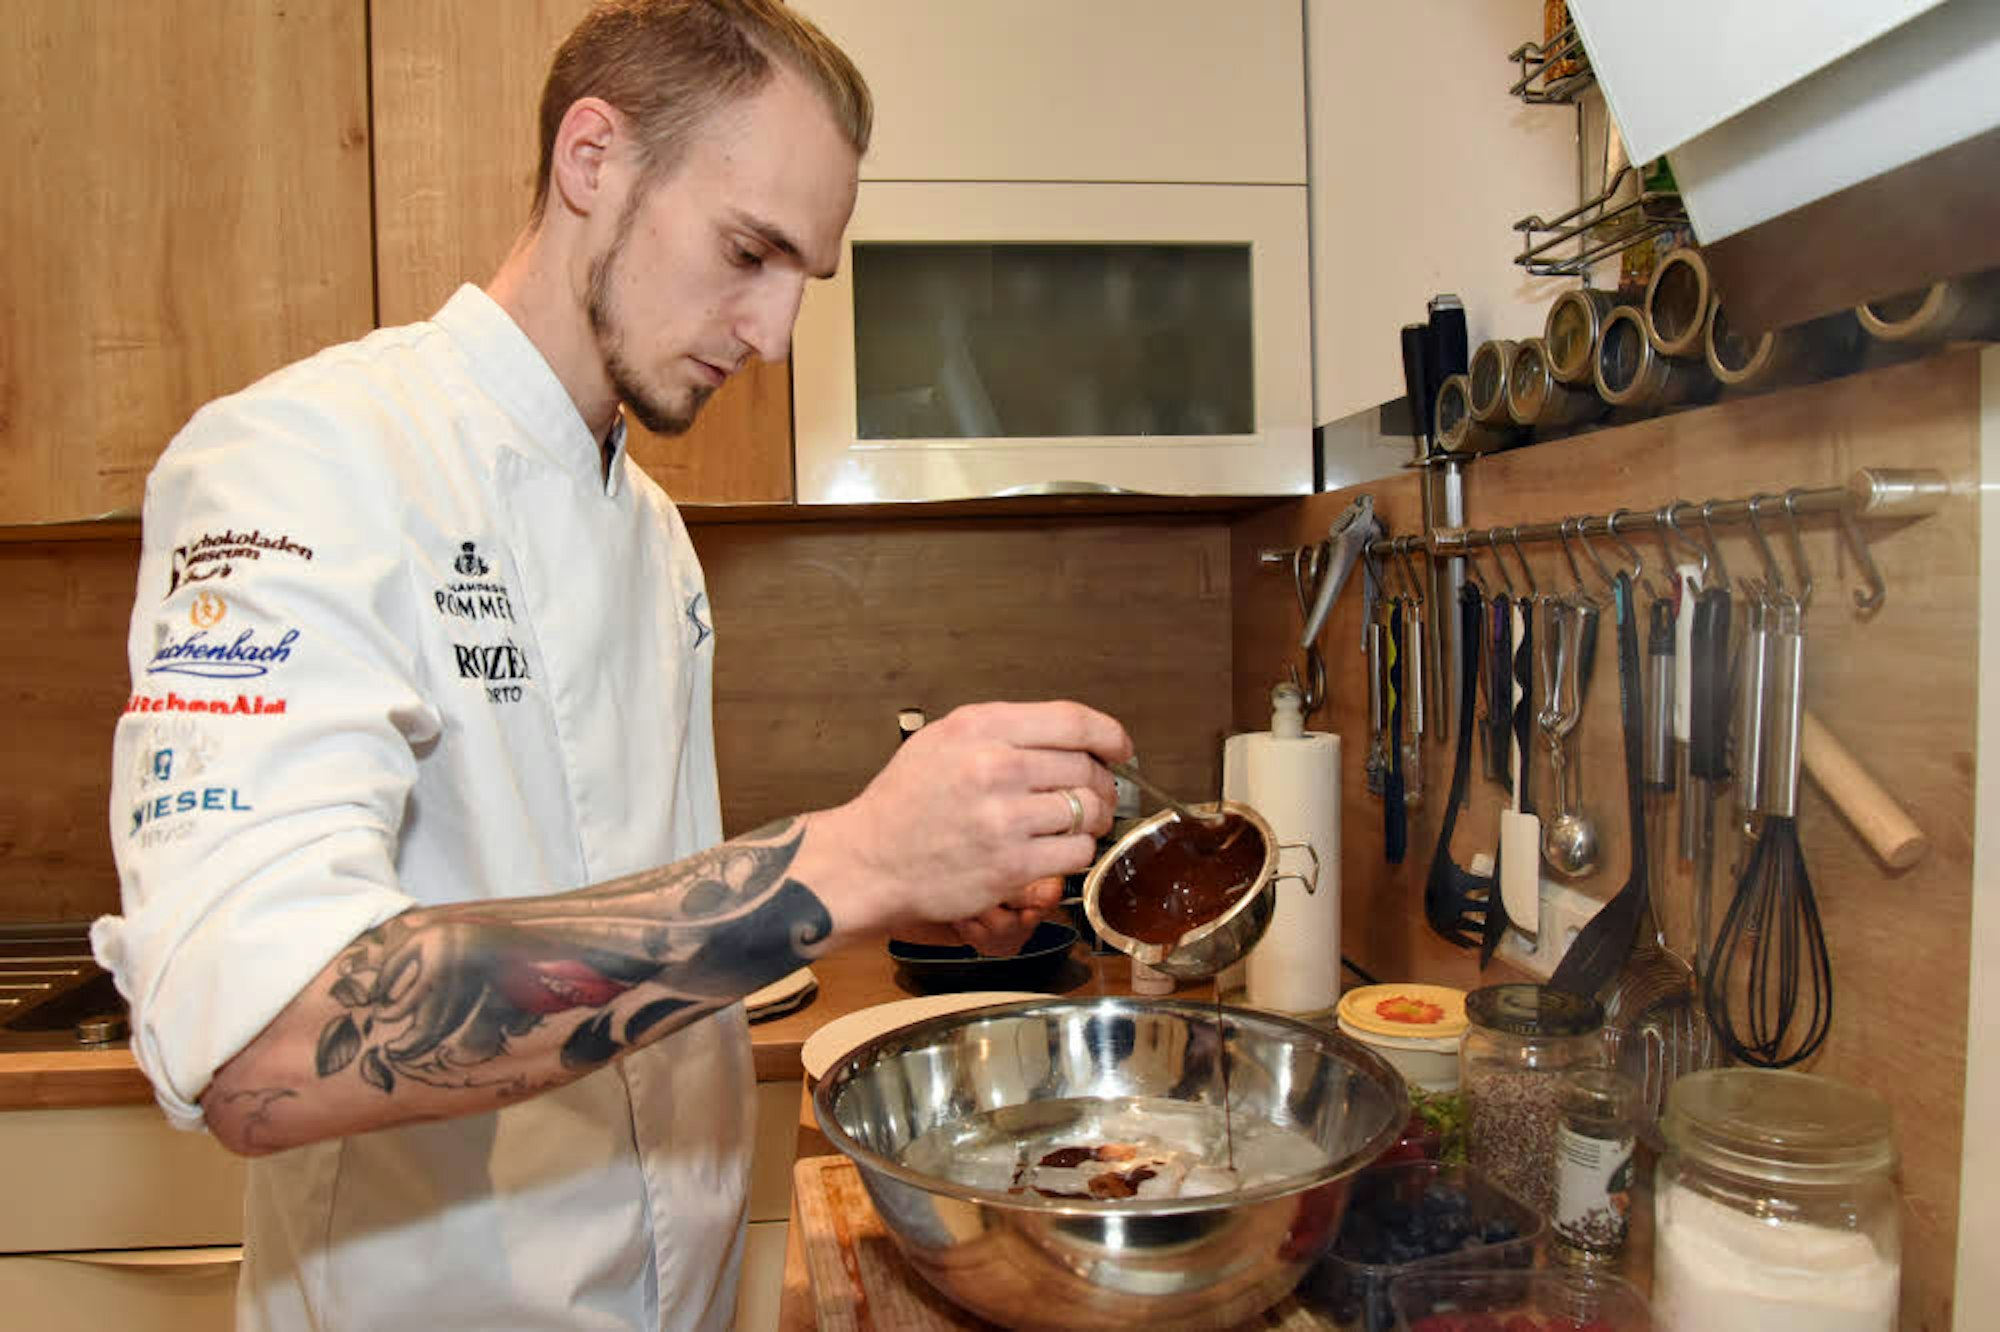 Leidenschaftlich gerne steht der Patissier Cyril Becker in der Küche und zaubert wahre Dessert-Kunstwerke aus unterschiedlichen Lebensmitteln.